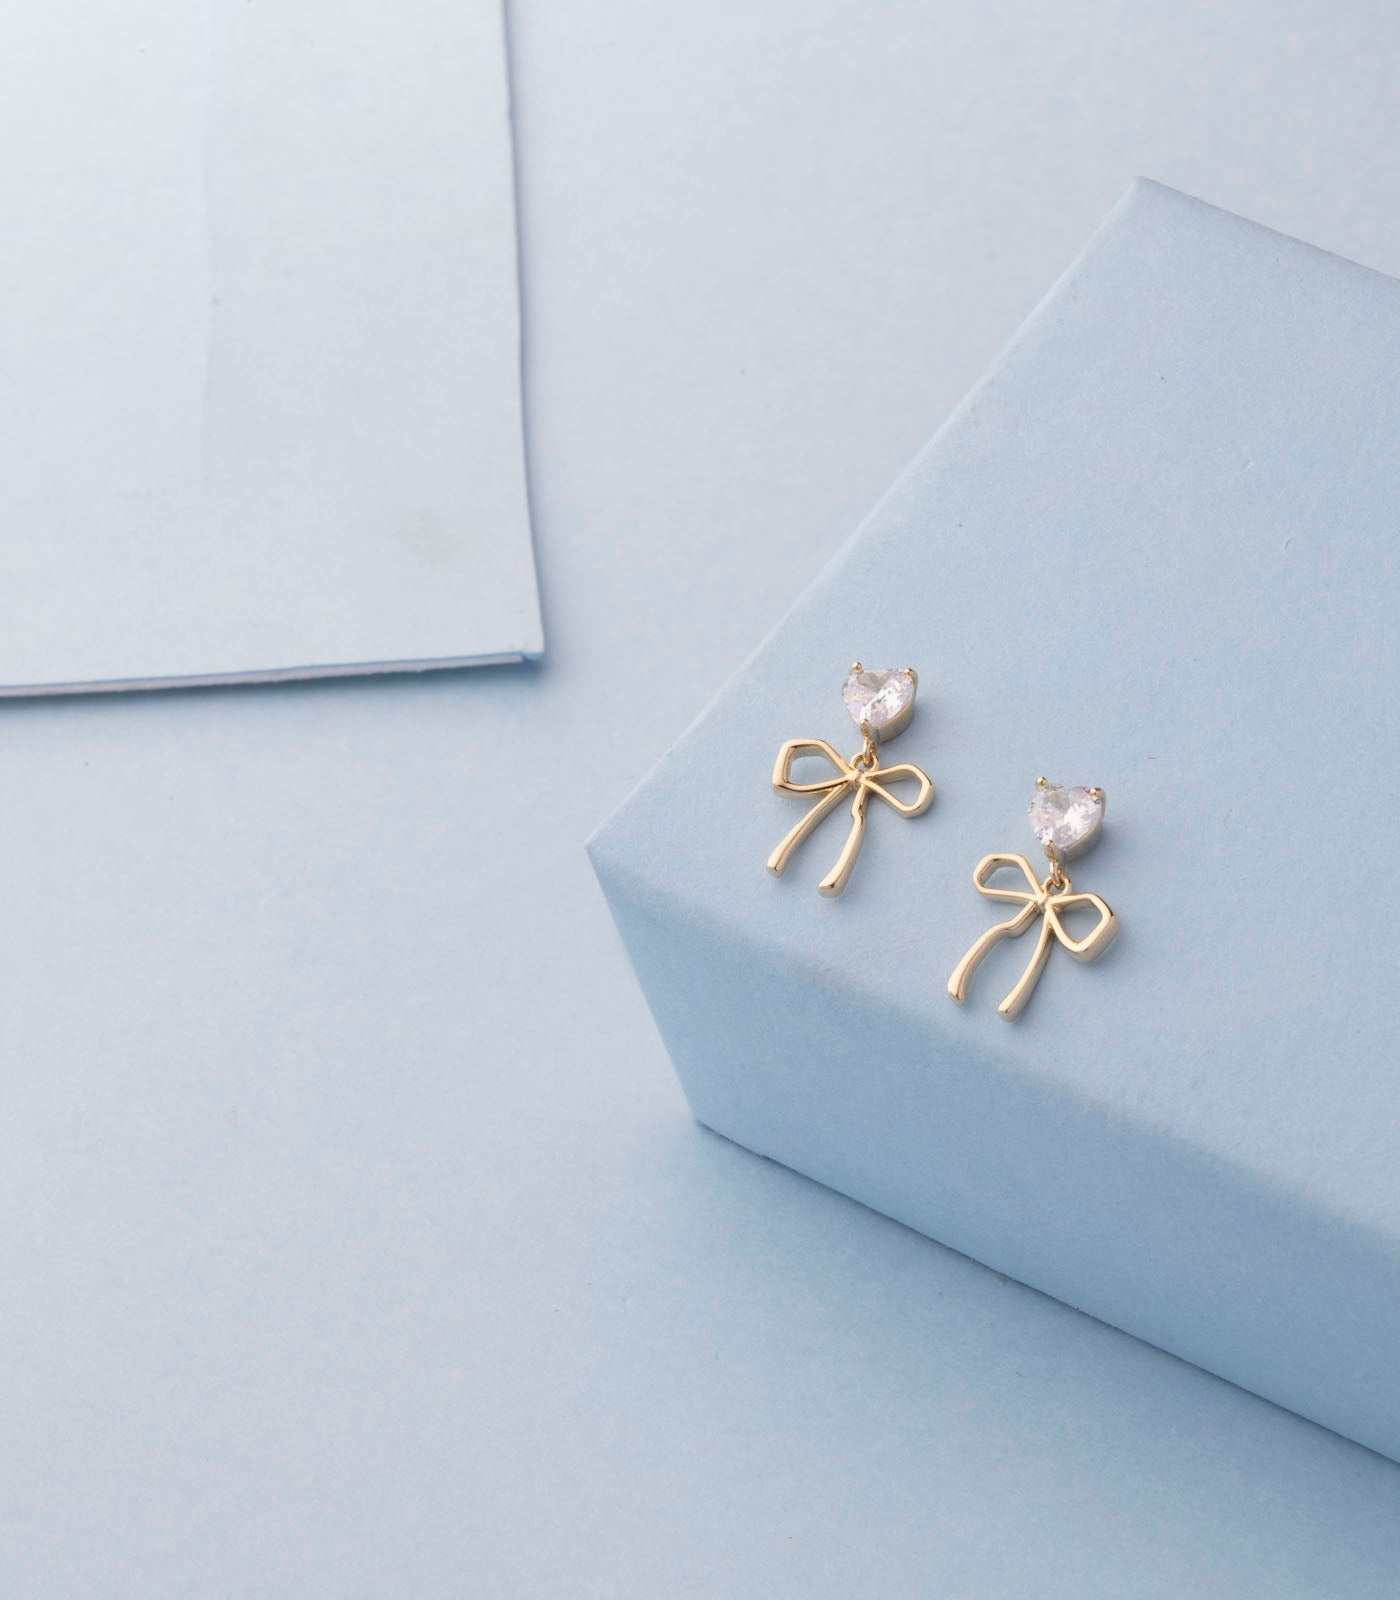 Blossom beauty earrings (Brass)